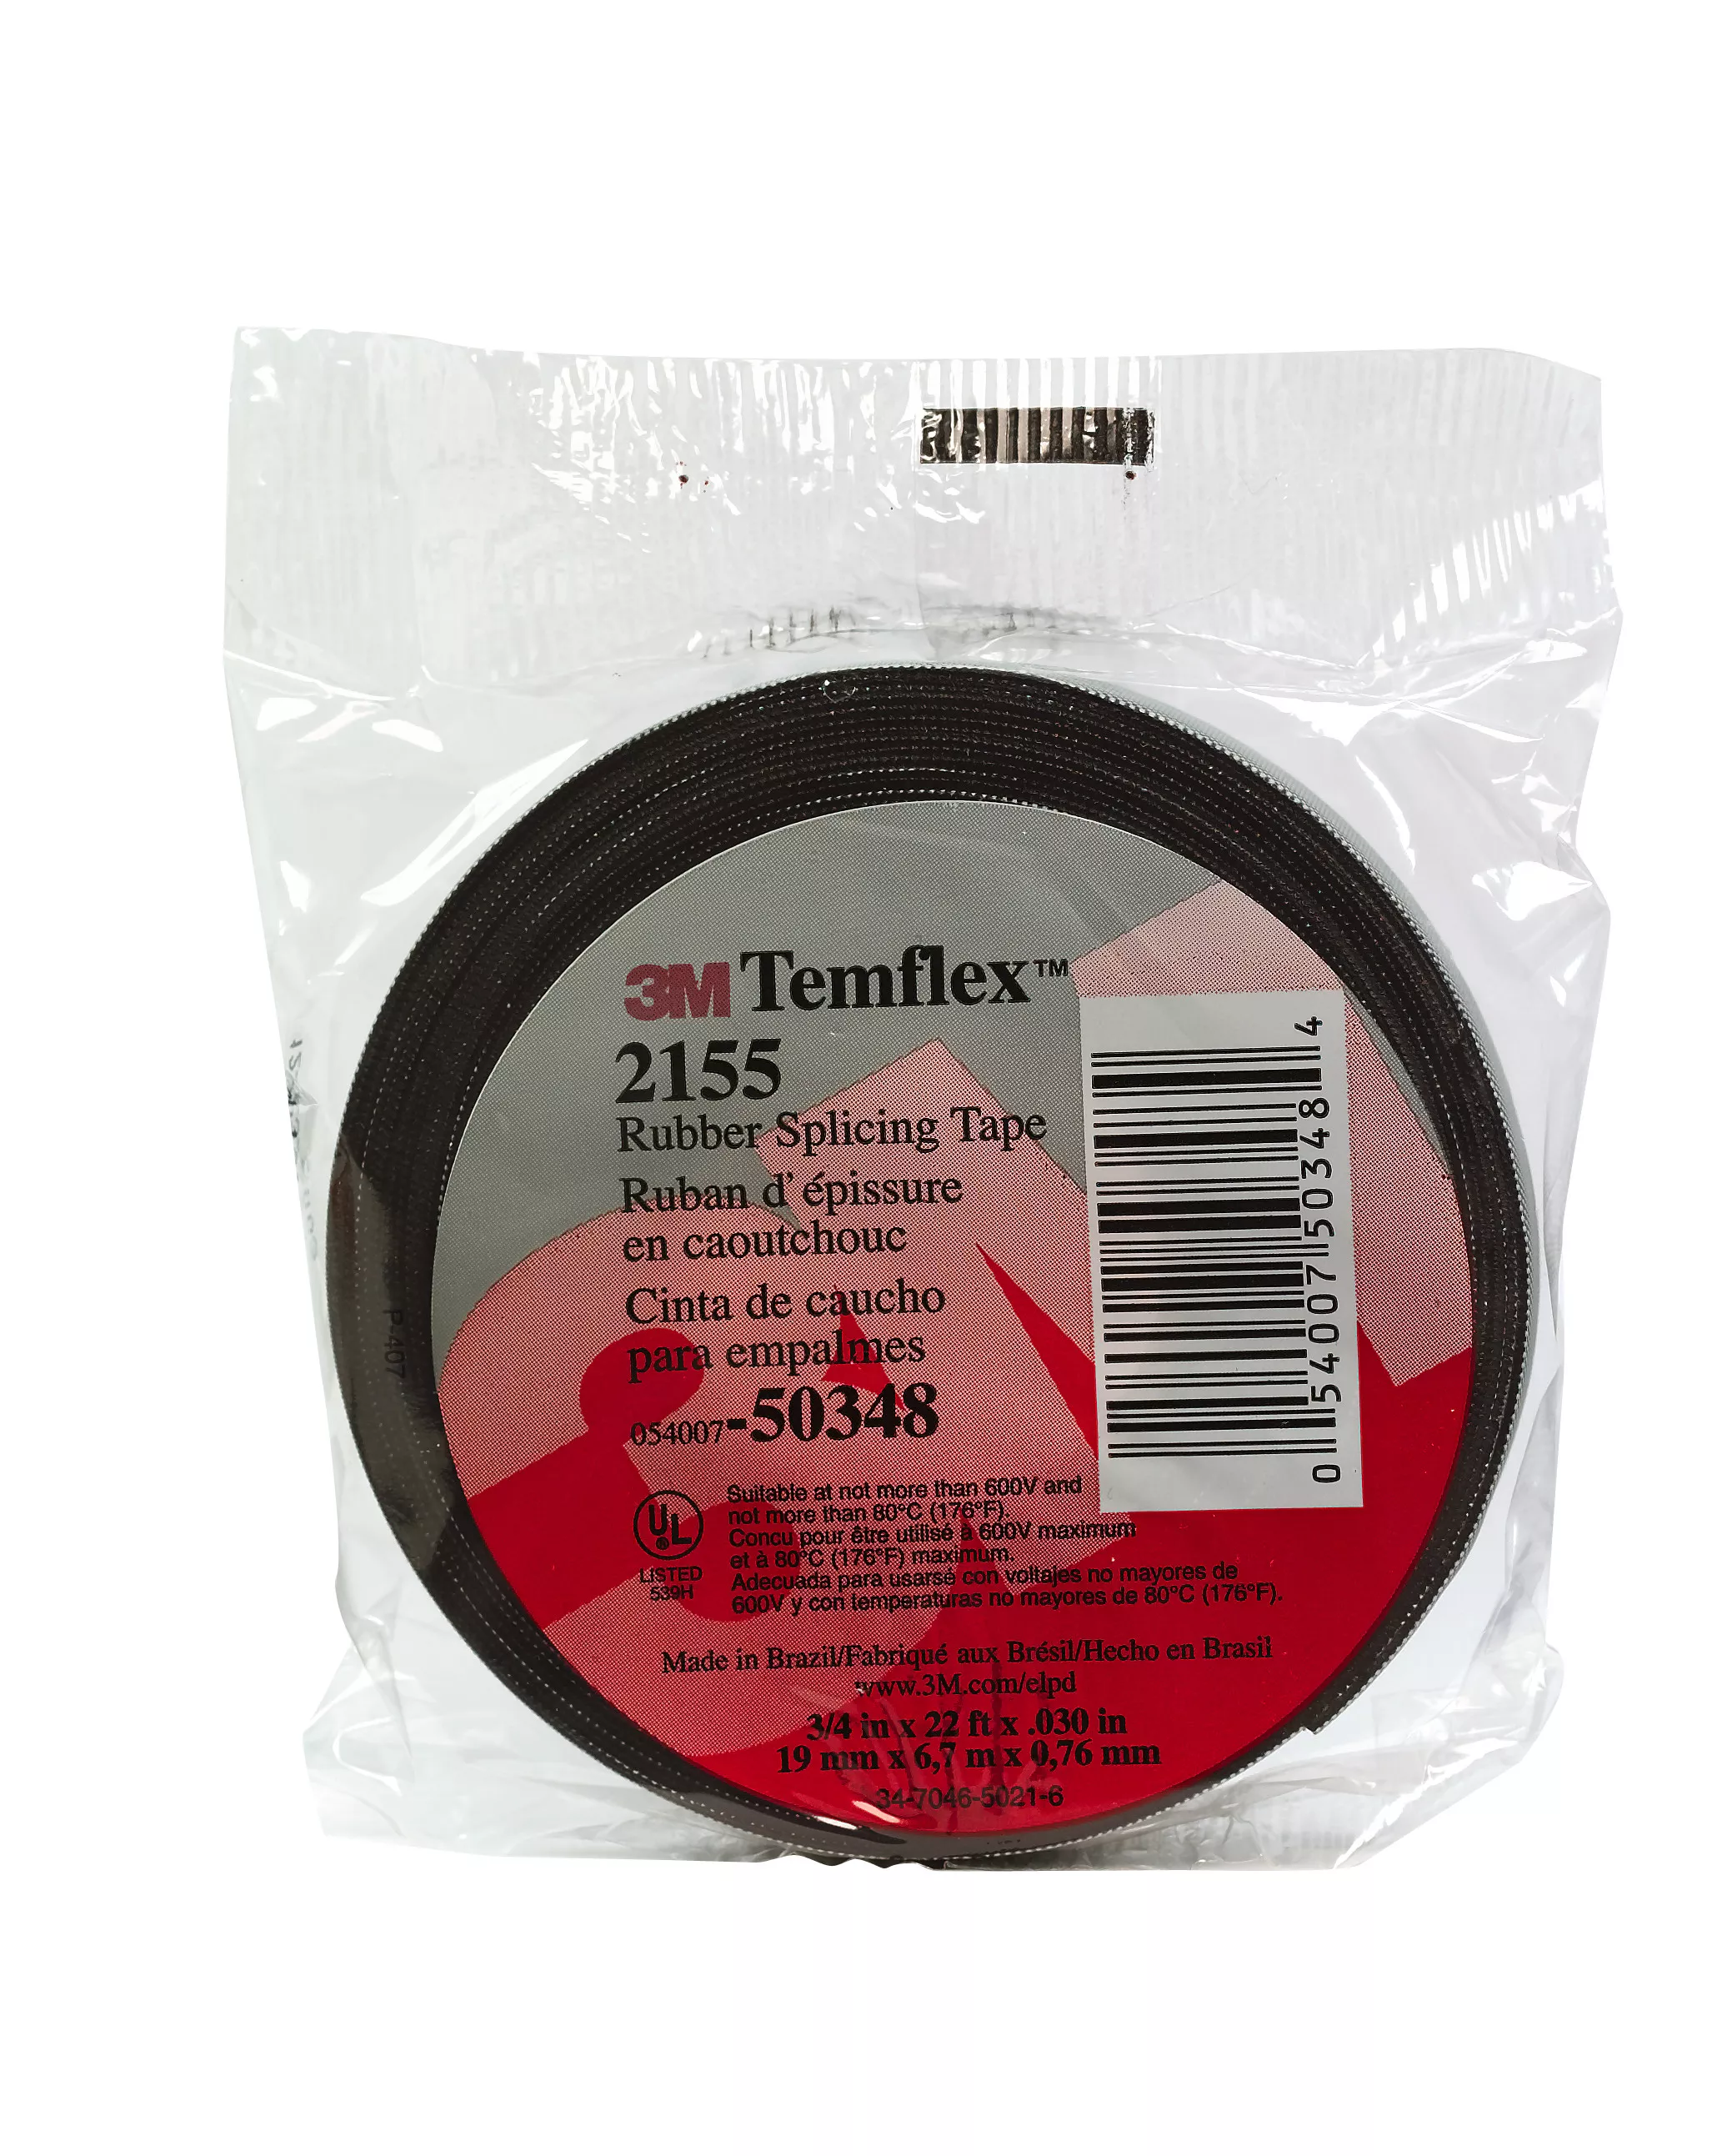 SKU 7000089970 | 3M™ Temflex™ Rubber Splicing Tape 2155